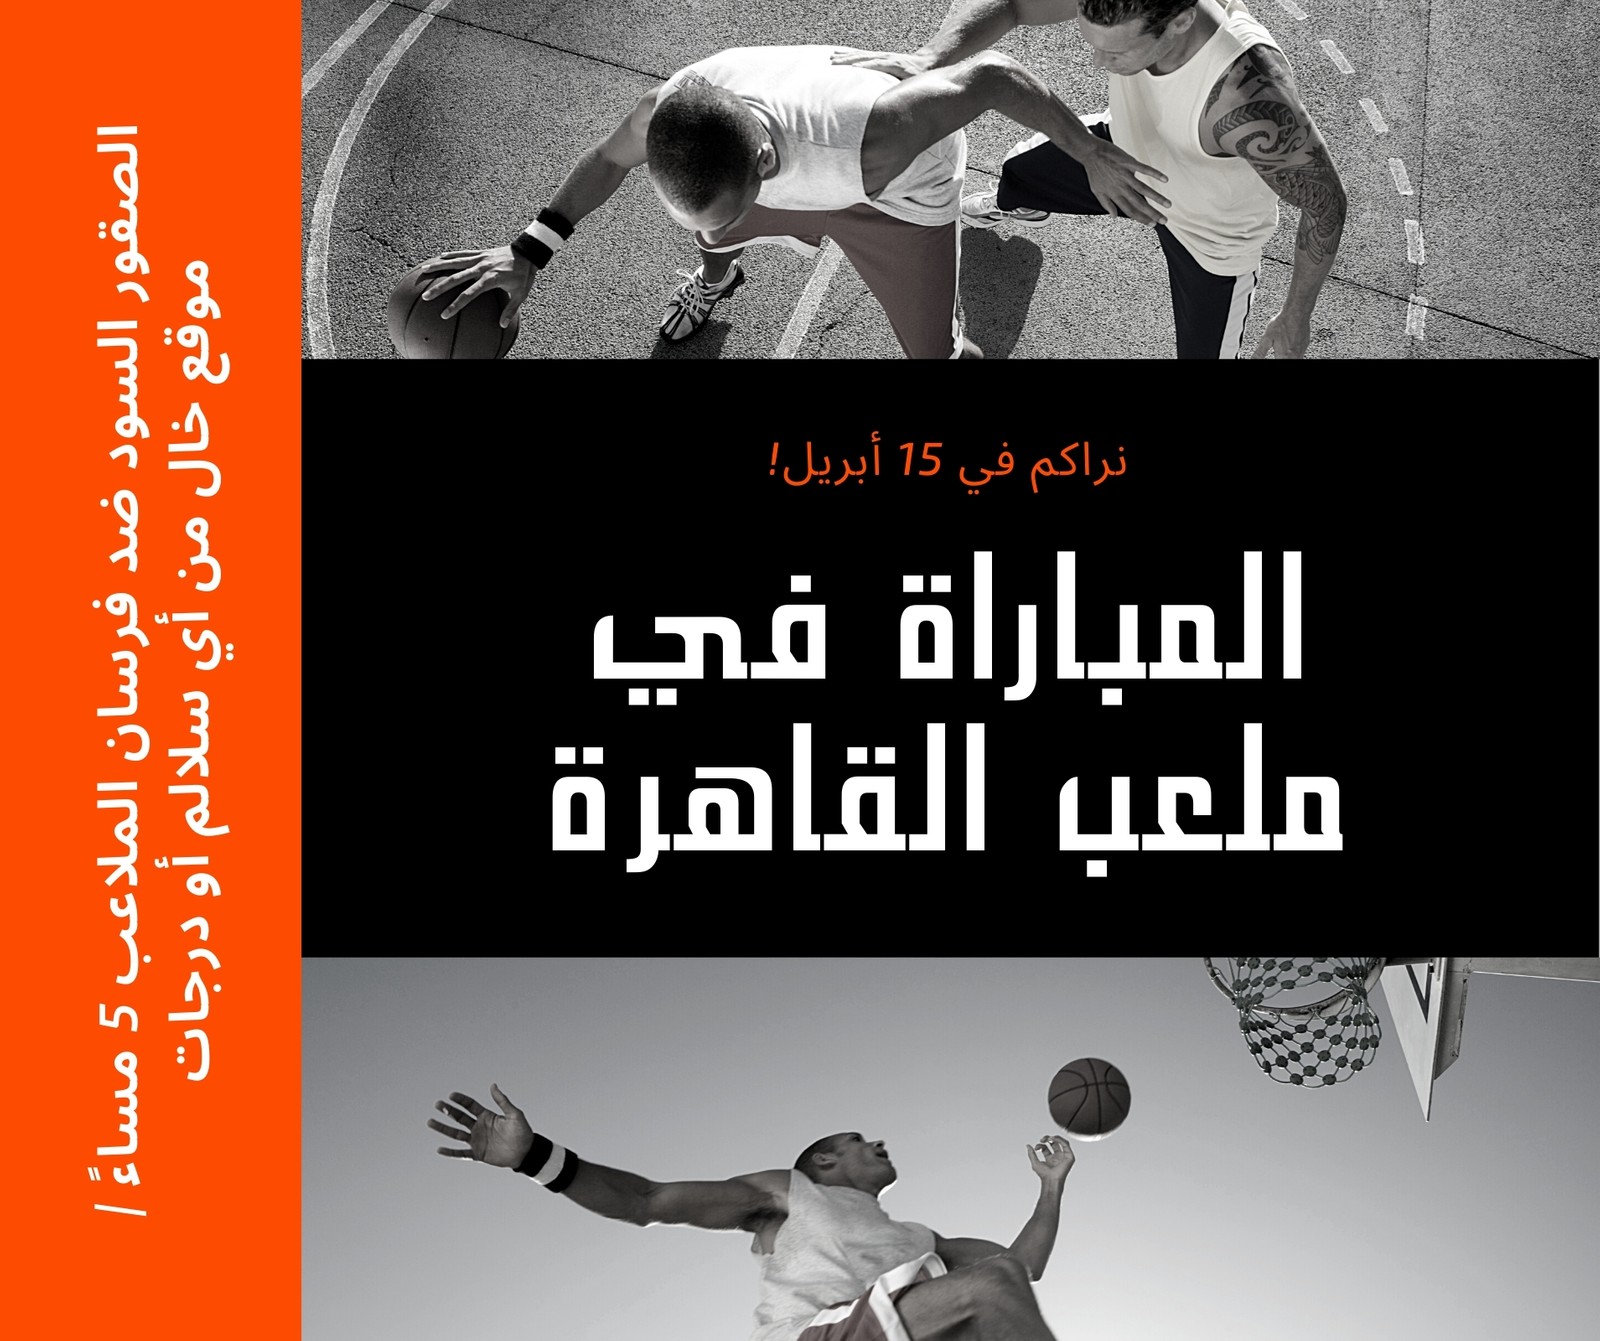 منشور فيسبوك برتقالي إعلان منافسات كرة سلة